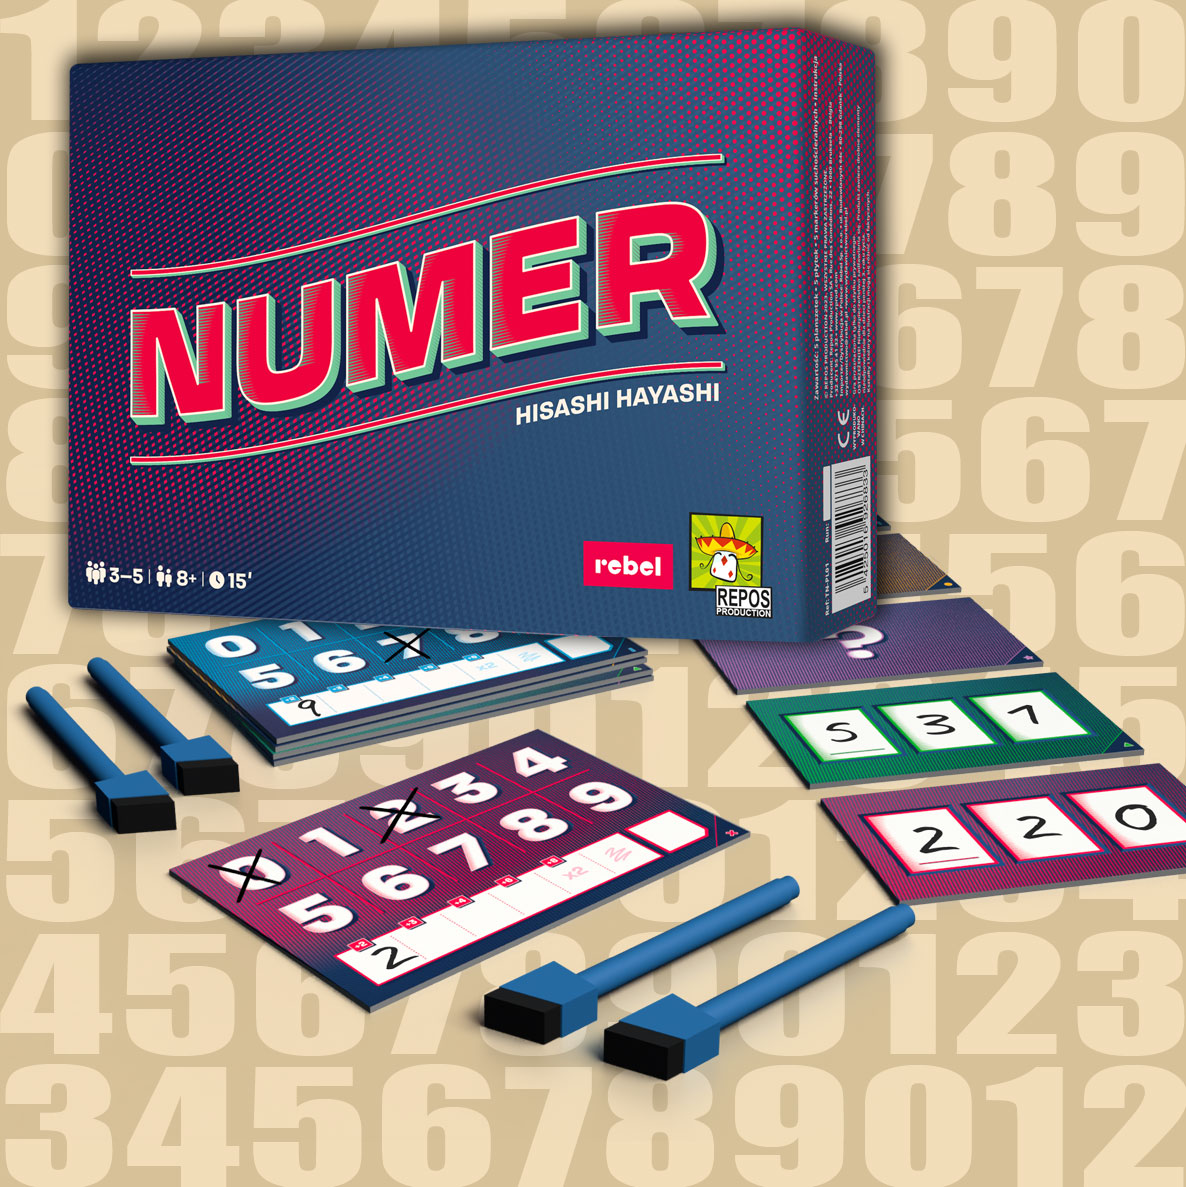 Gra Numer - pudełko i komponenty